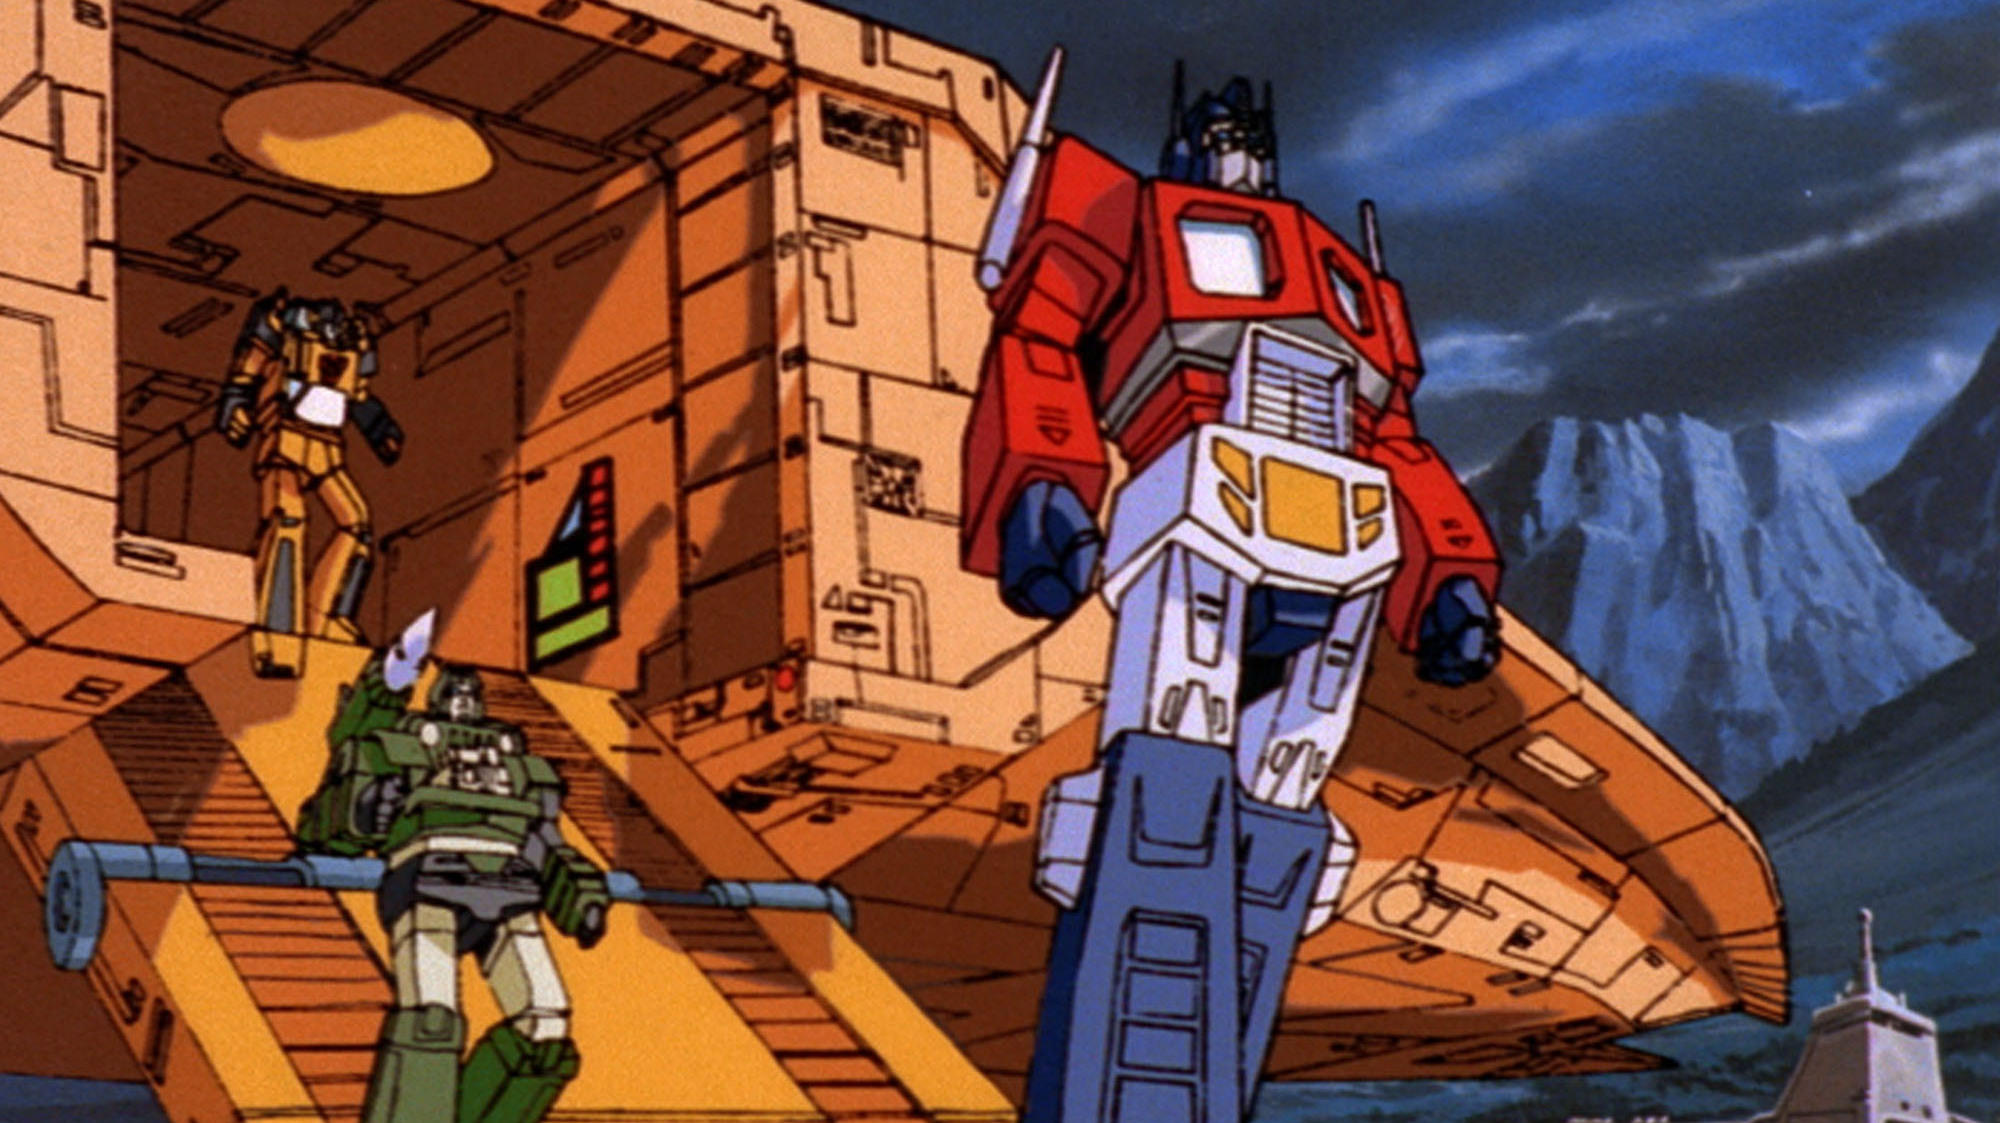 transformers energon optimus prime voice actor